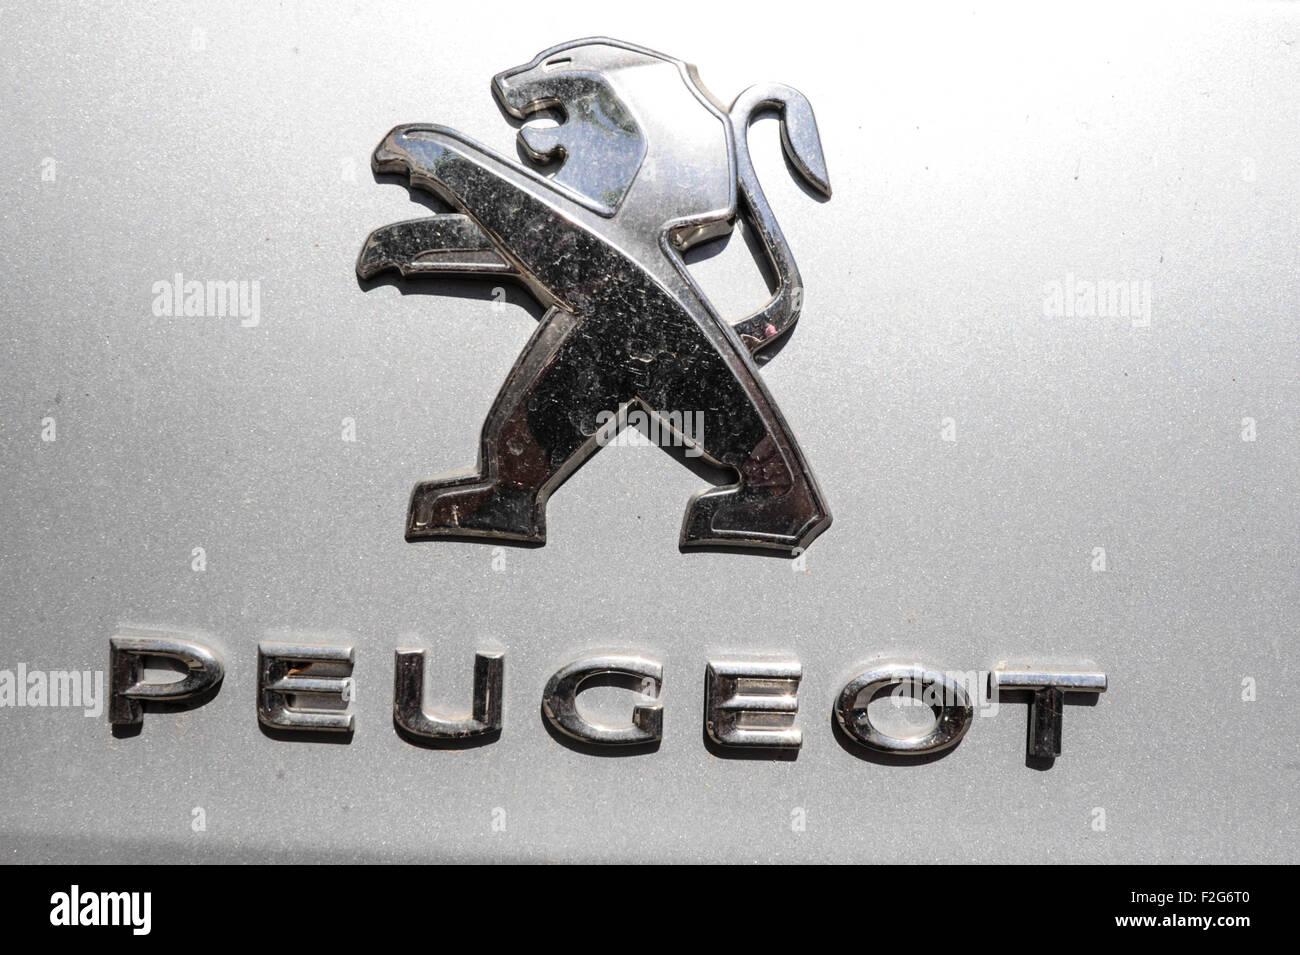 Automobile Peugeot - automóvil  Peugeot Stock Photo